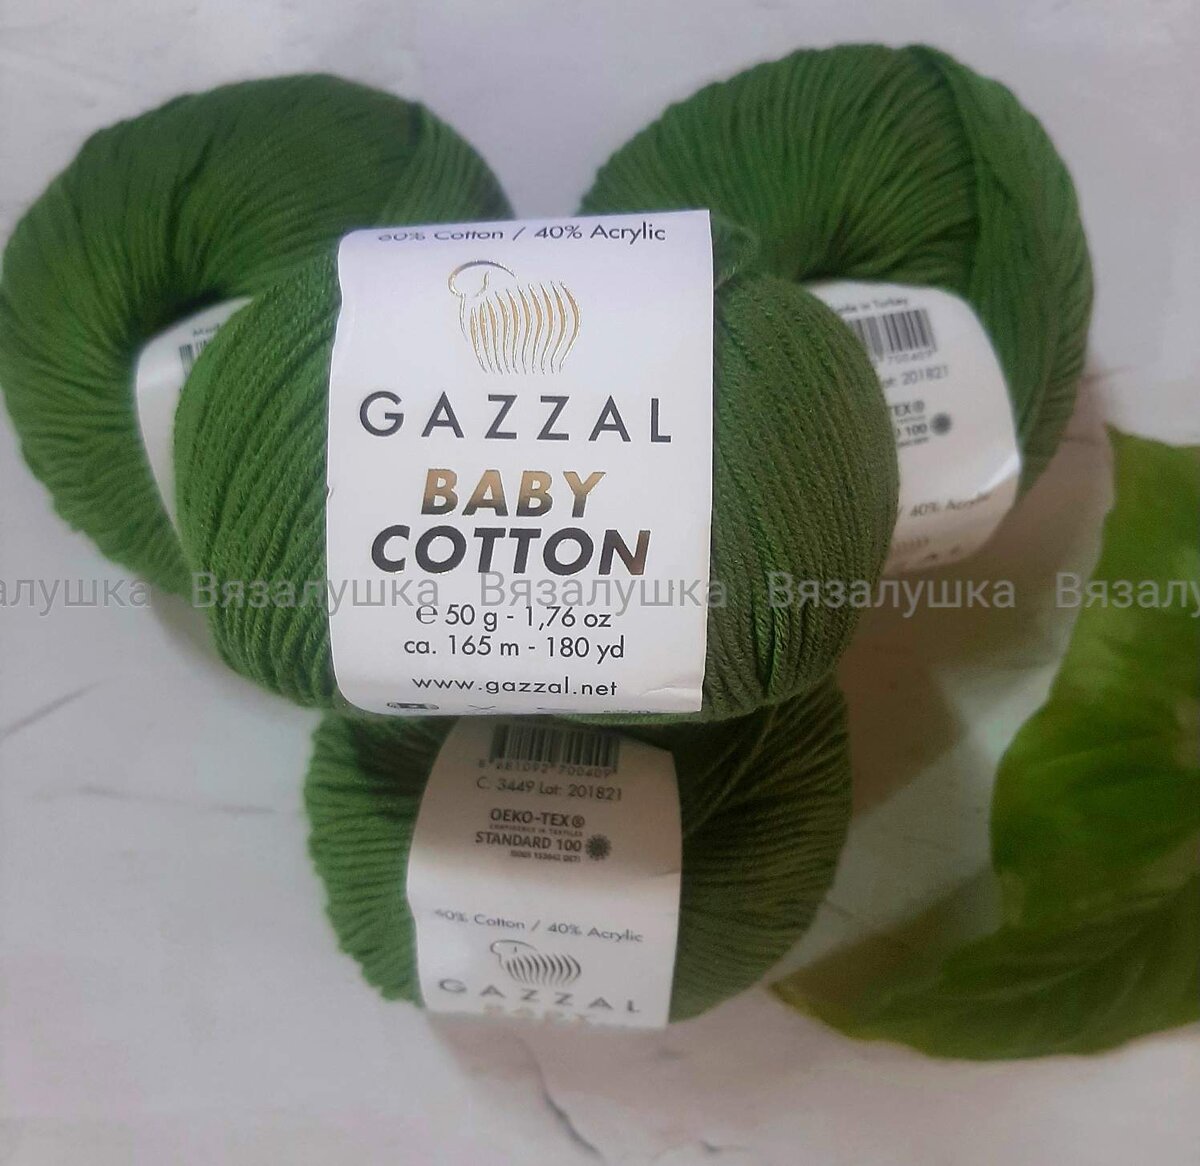 Мягкая и шелковистая, как молодая трава, на лето идеально - мой обзор пряжи GazzalBaby Cotton